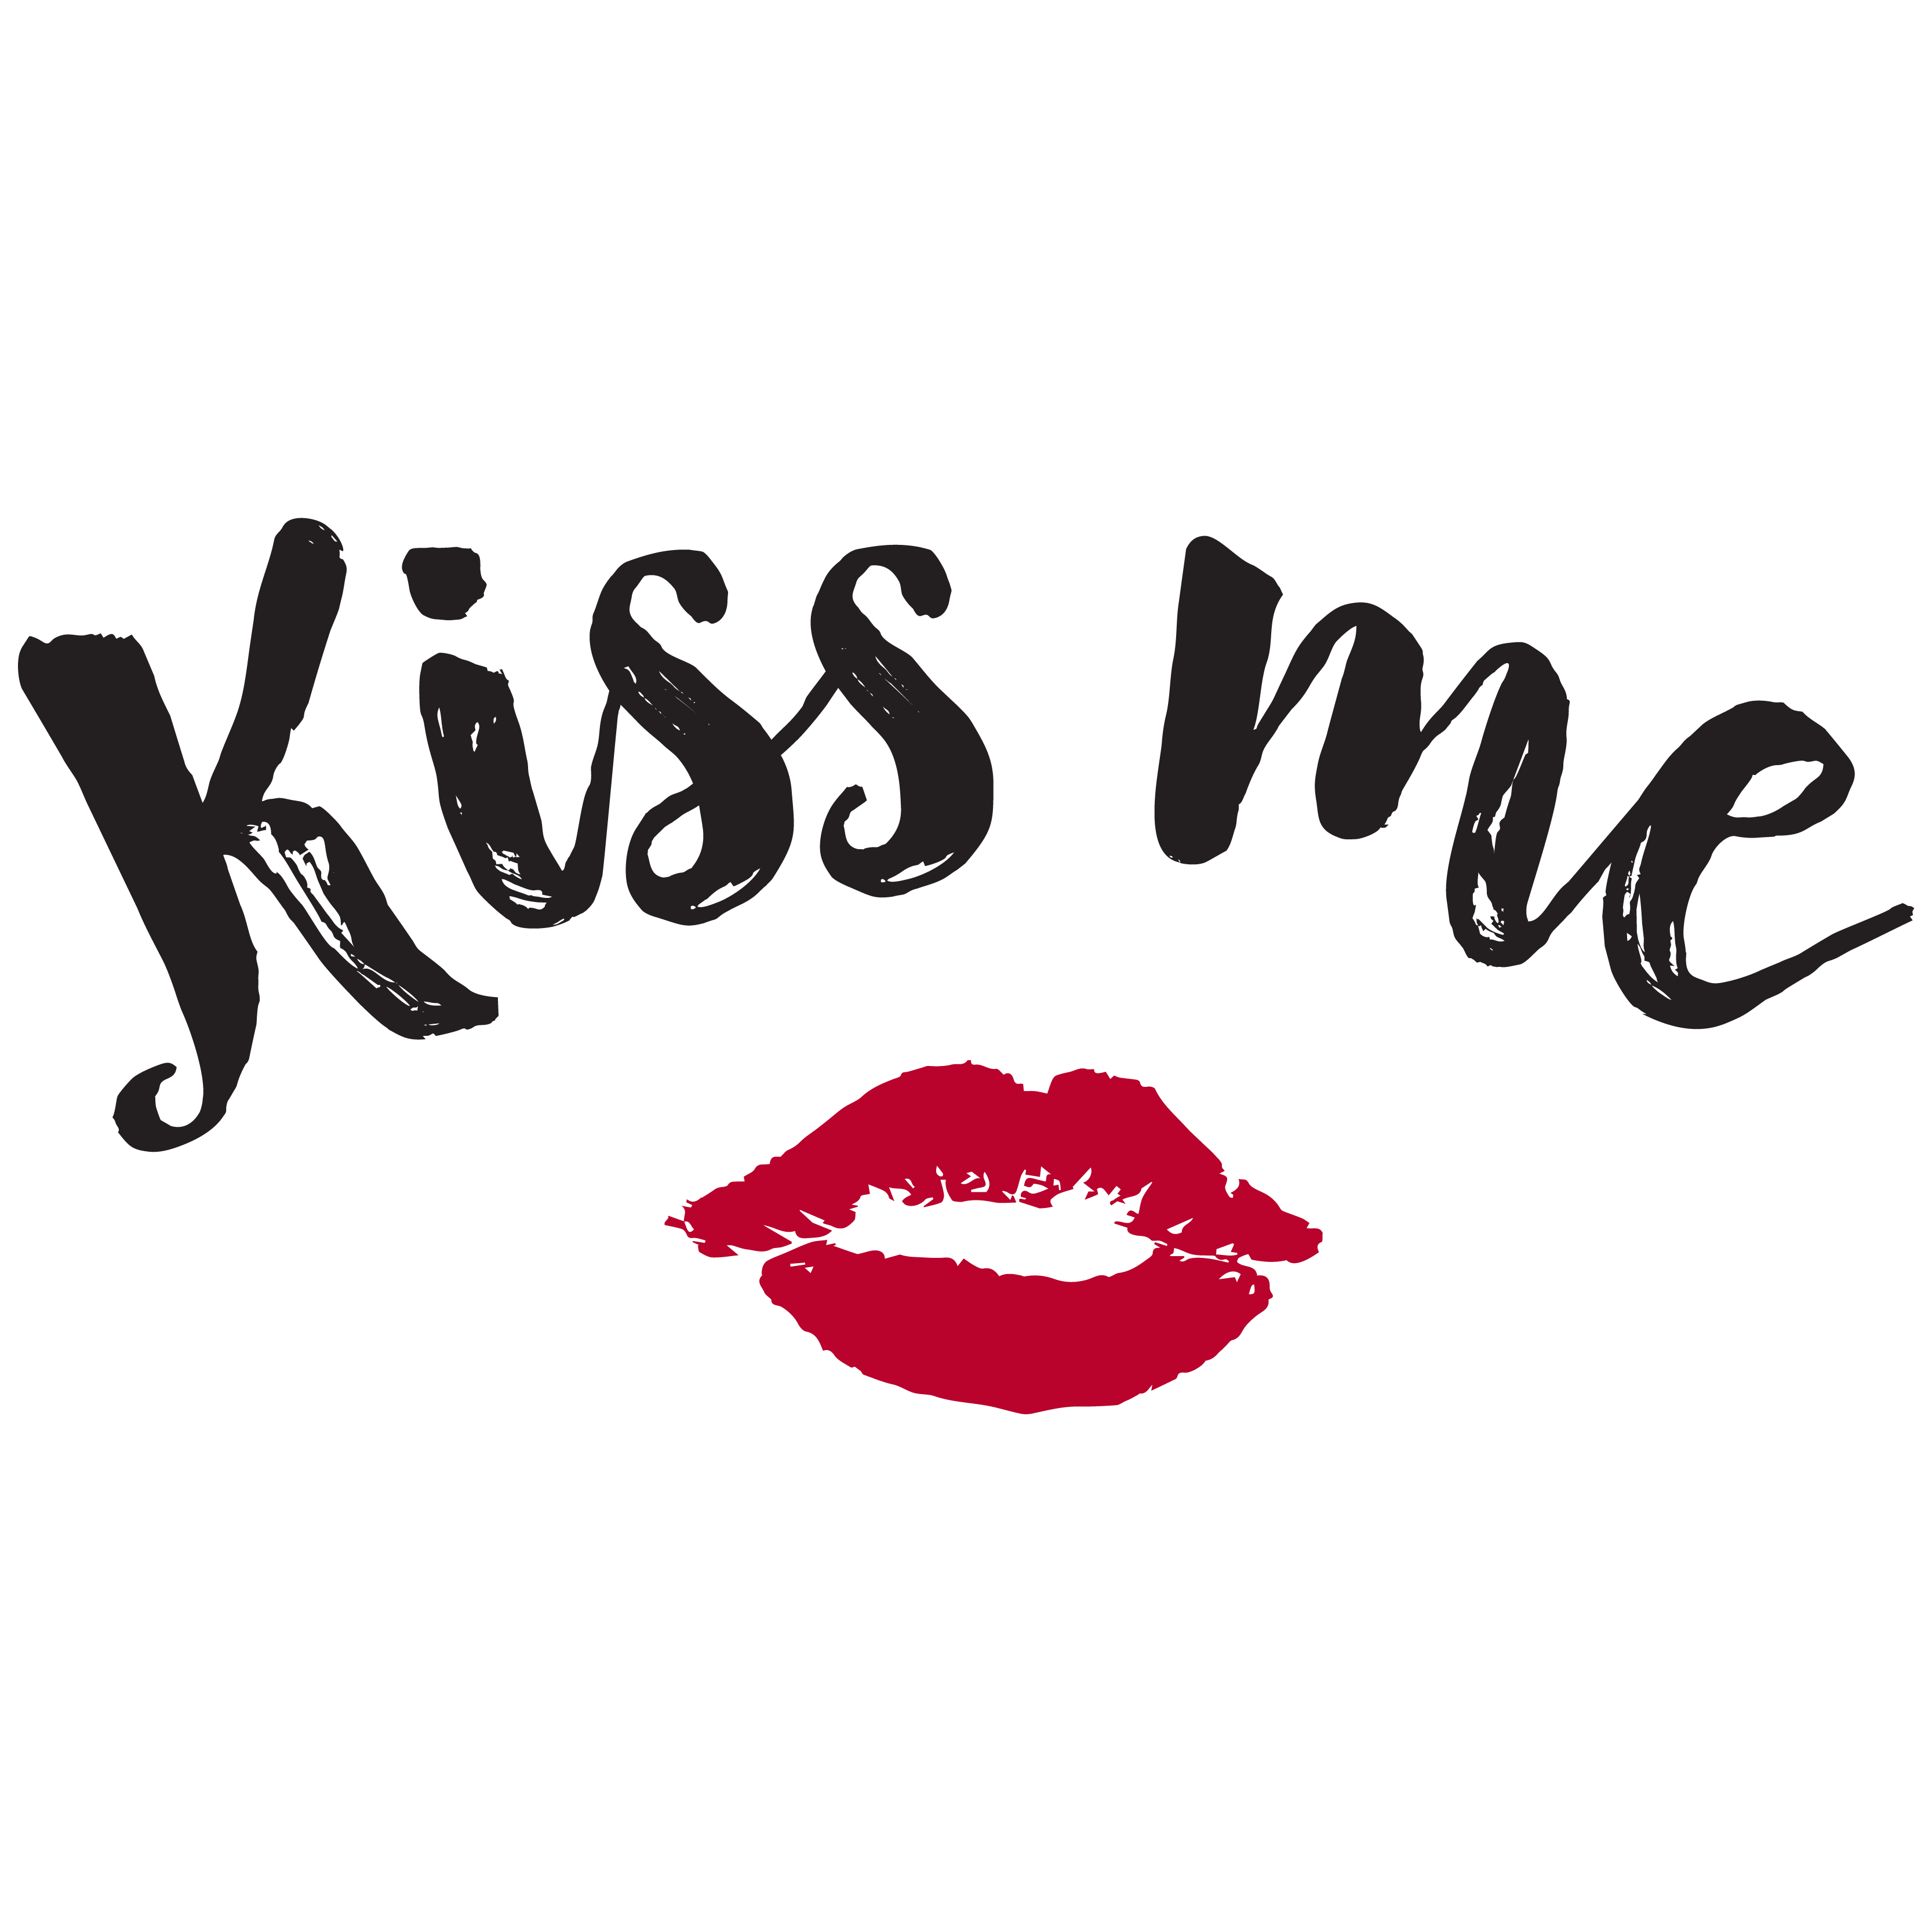 I love lips. Kiss надпись. Надпись Кисс ми. Наклейки губы. Поцелуй меня надпись.